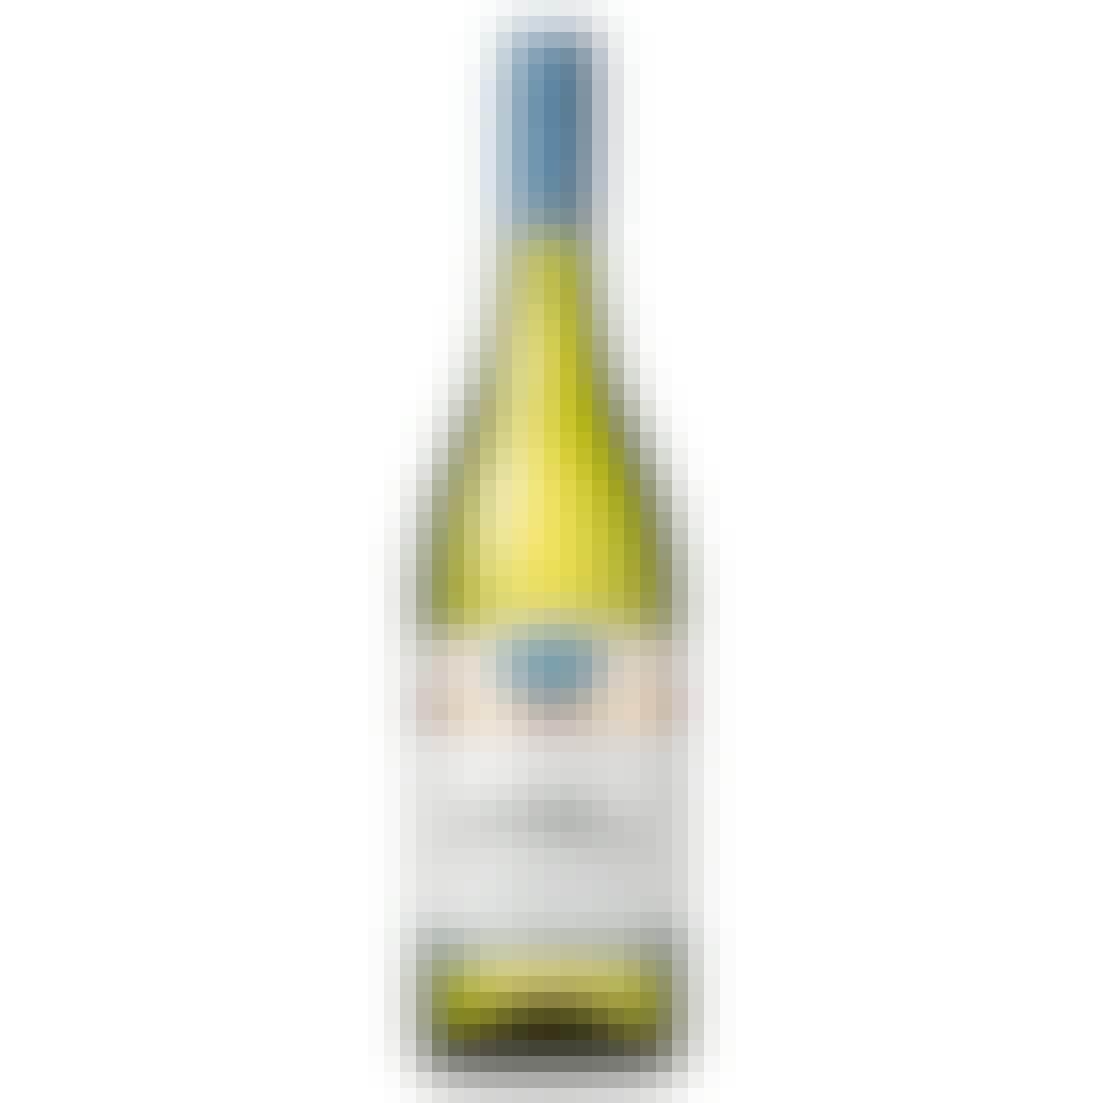 Oyster Bay Sauvignon Blanc 2020 750ml